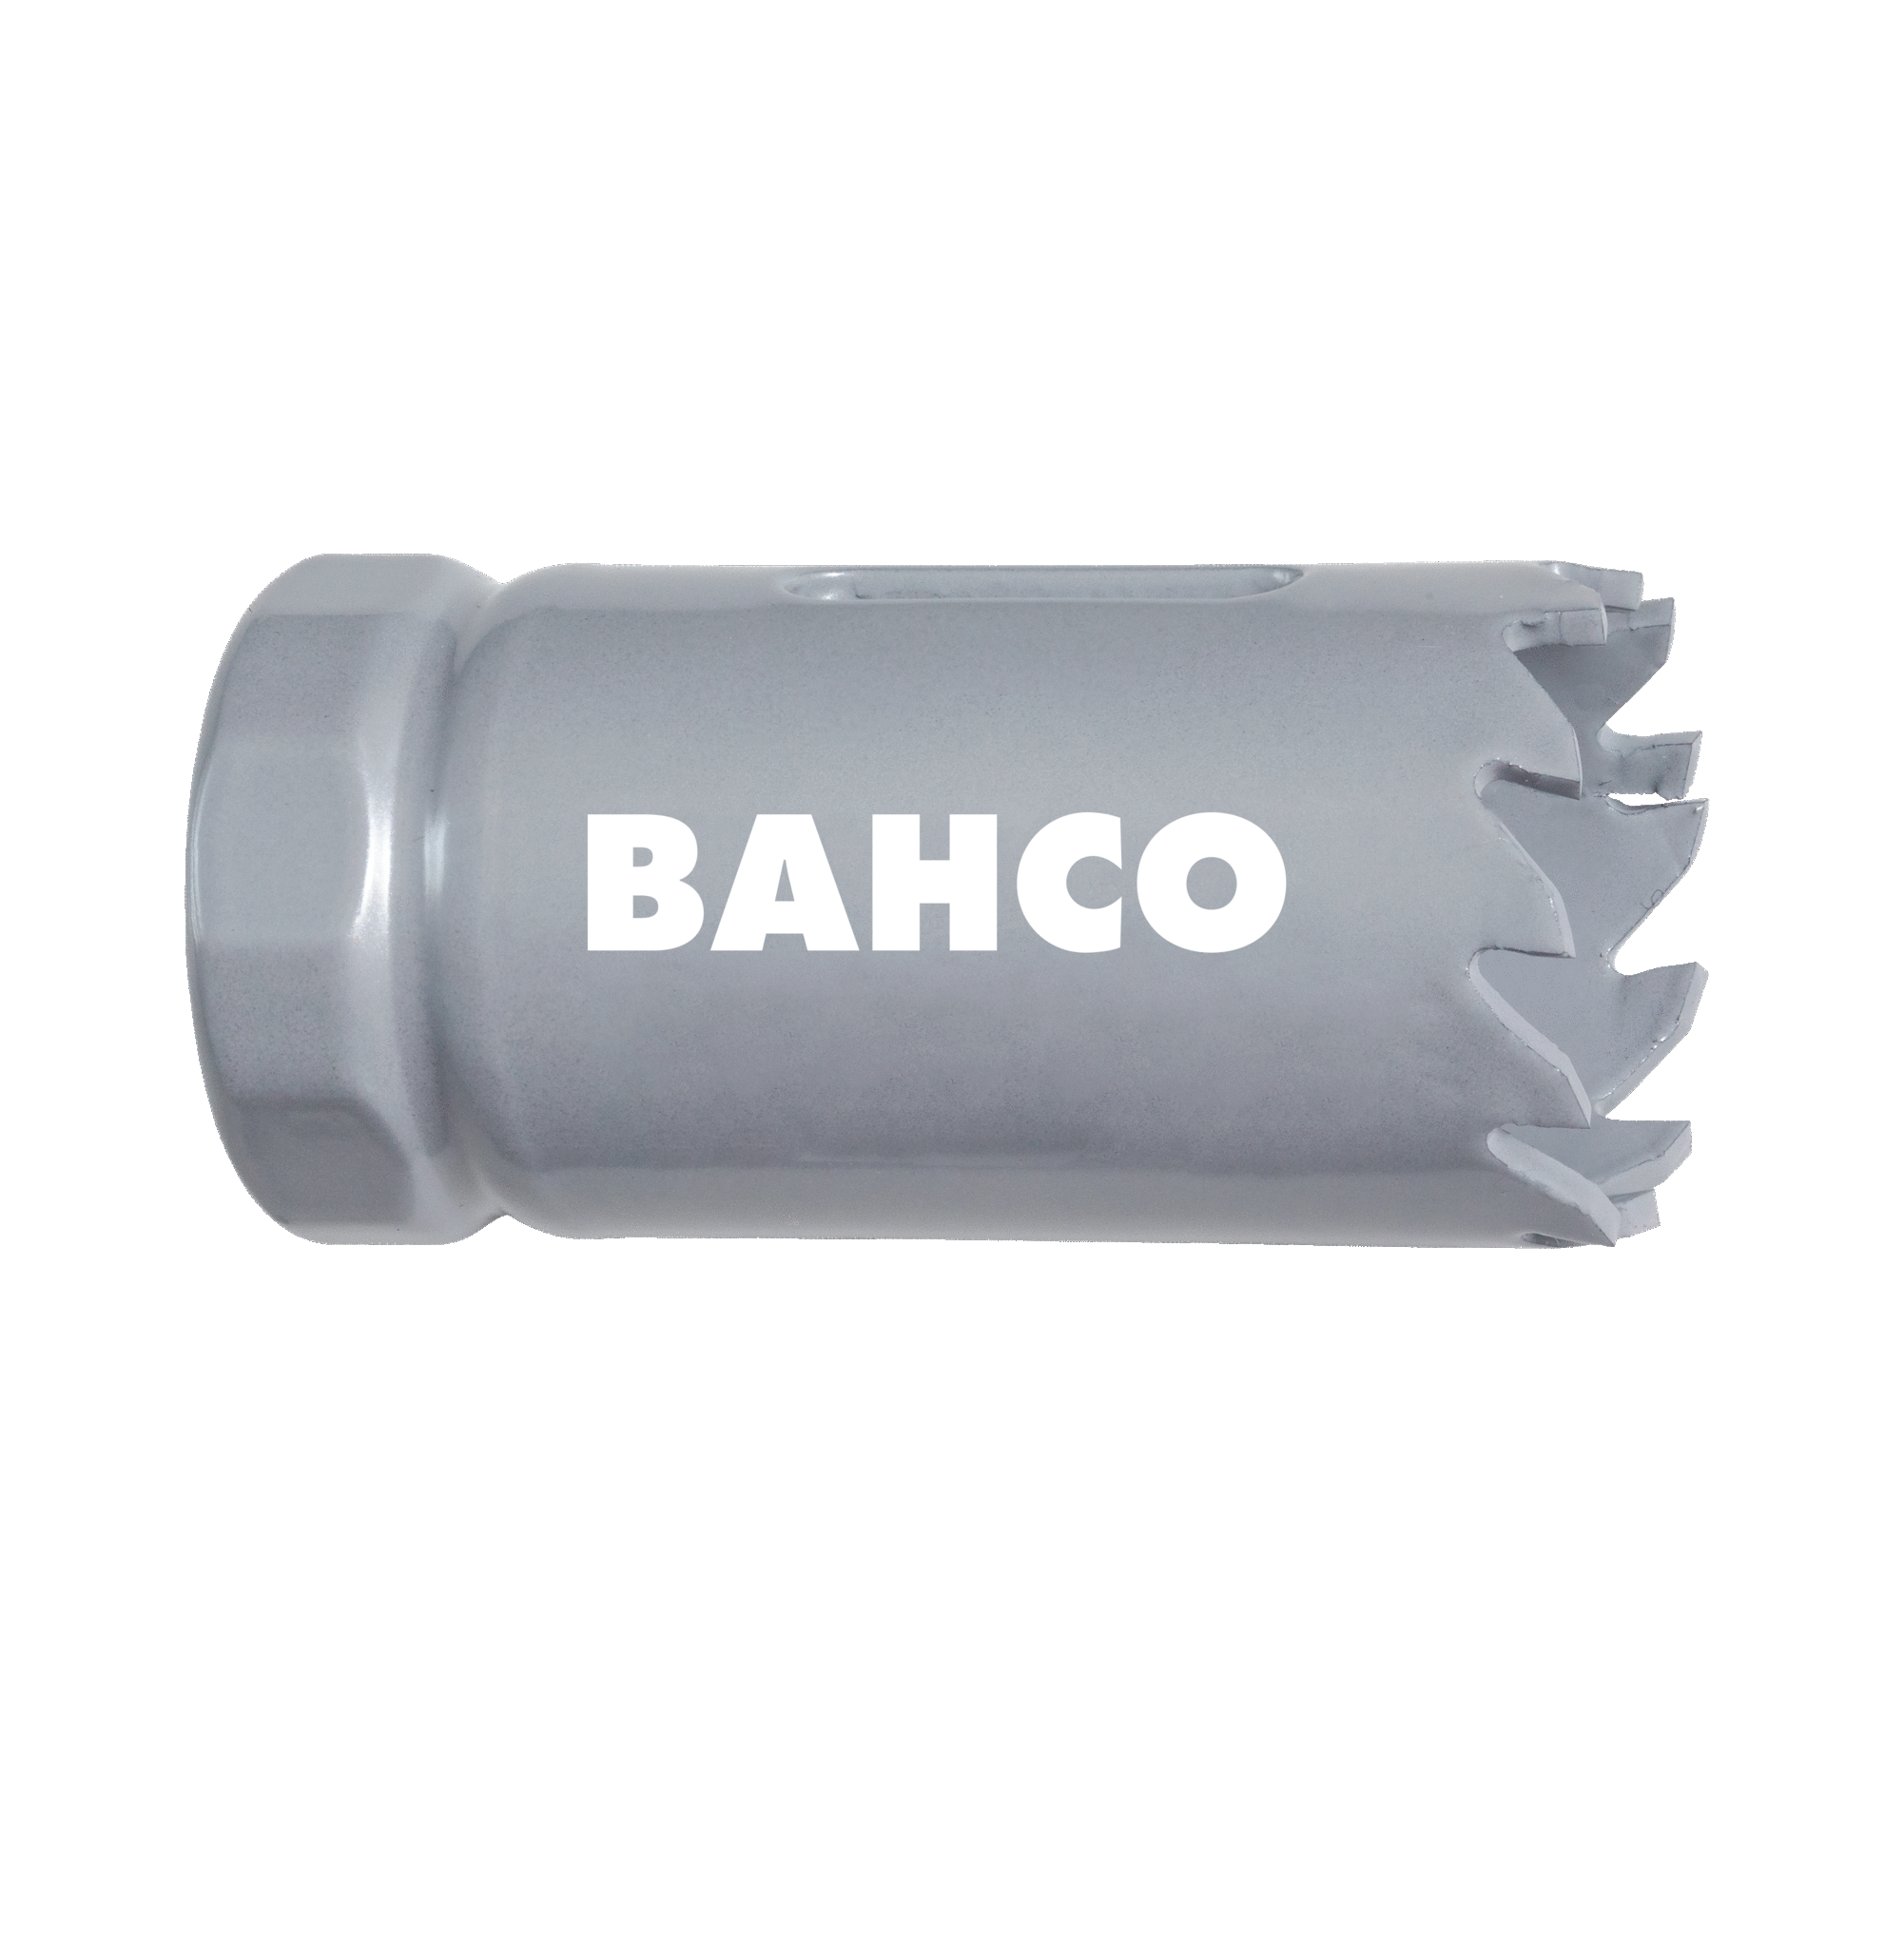 Кольцевые пилы с твердосплавными напайками BAHCO 3832-16